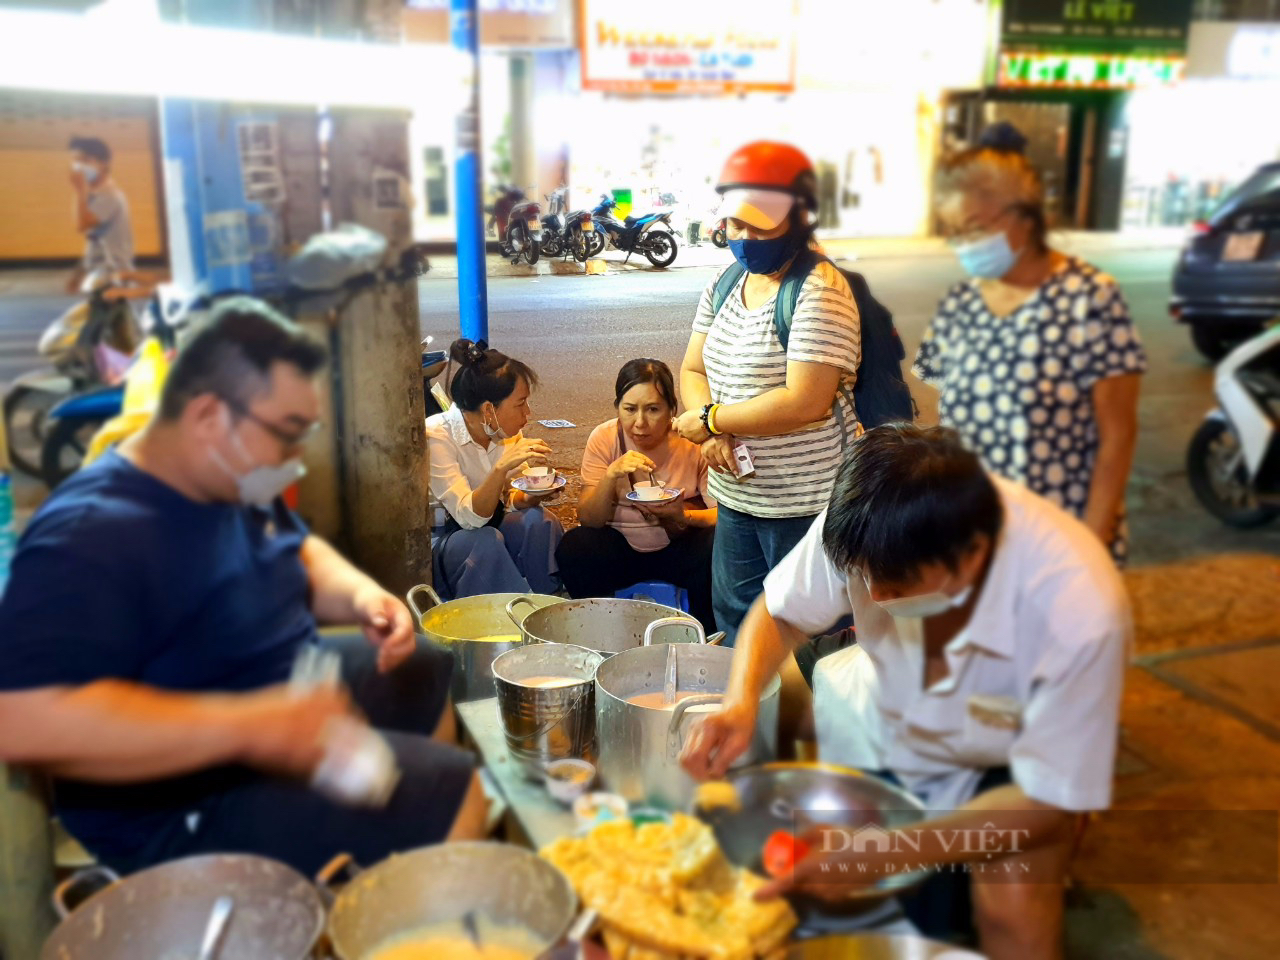 Sài Gòn quán: Lạ lùng quán chè nóng vỉa hè đường Võ Văn Tần, trời hầm hập mà khách vẫn đông - 3